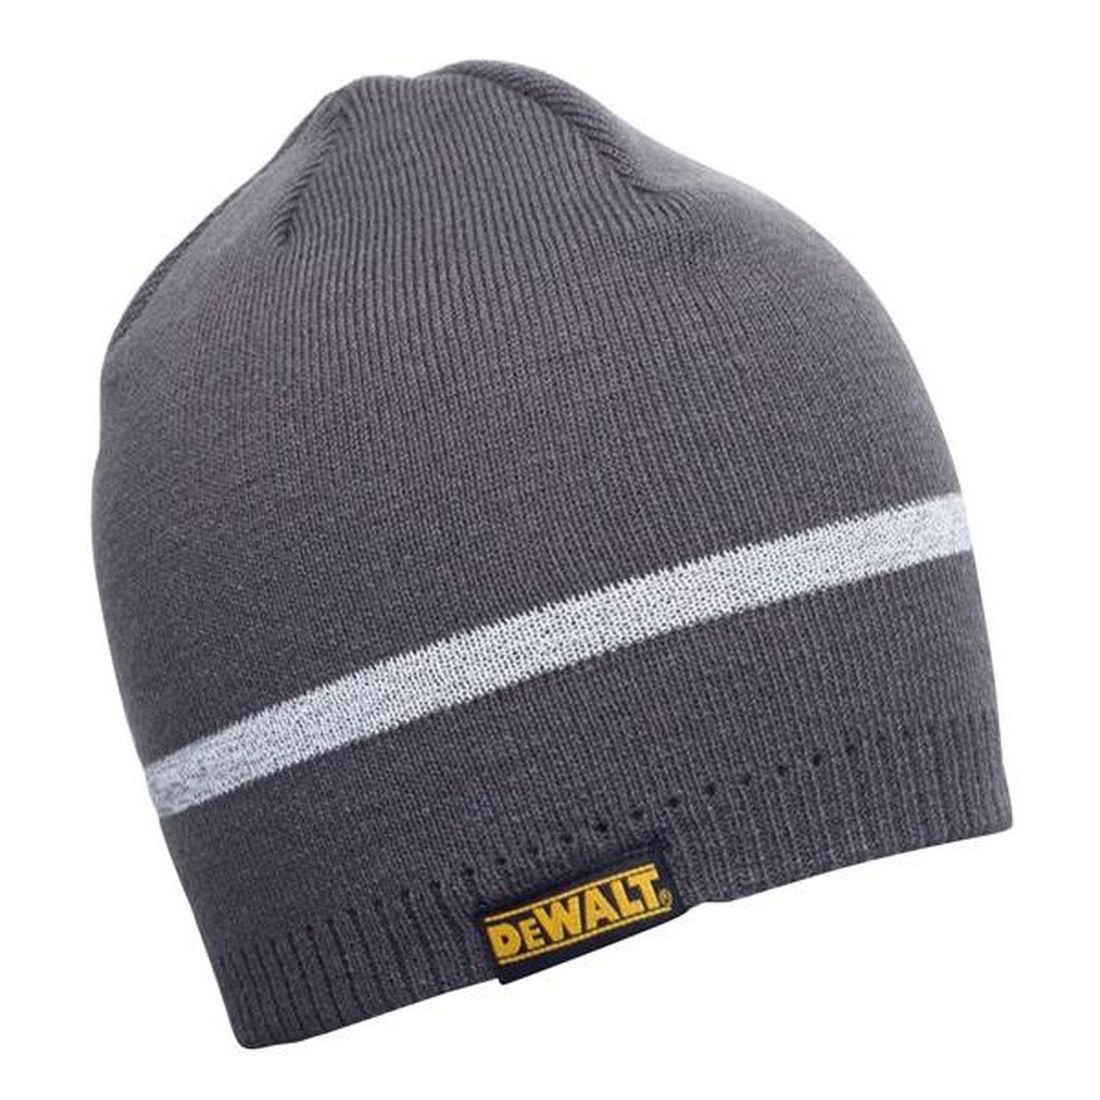 DEWALT Knitted Beanie Hat - Grey         